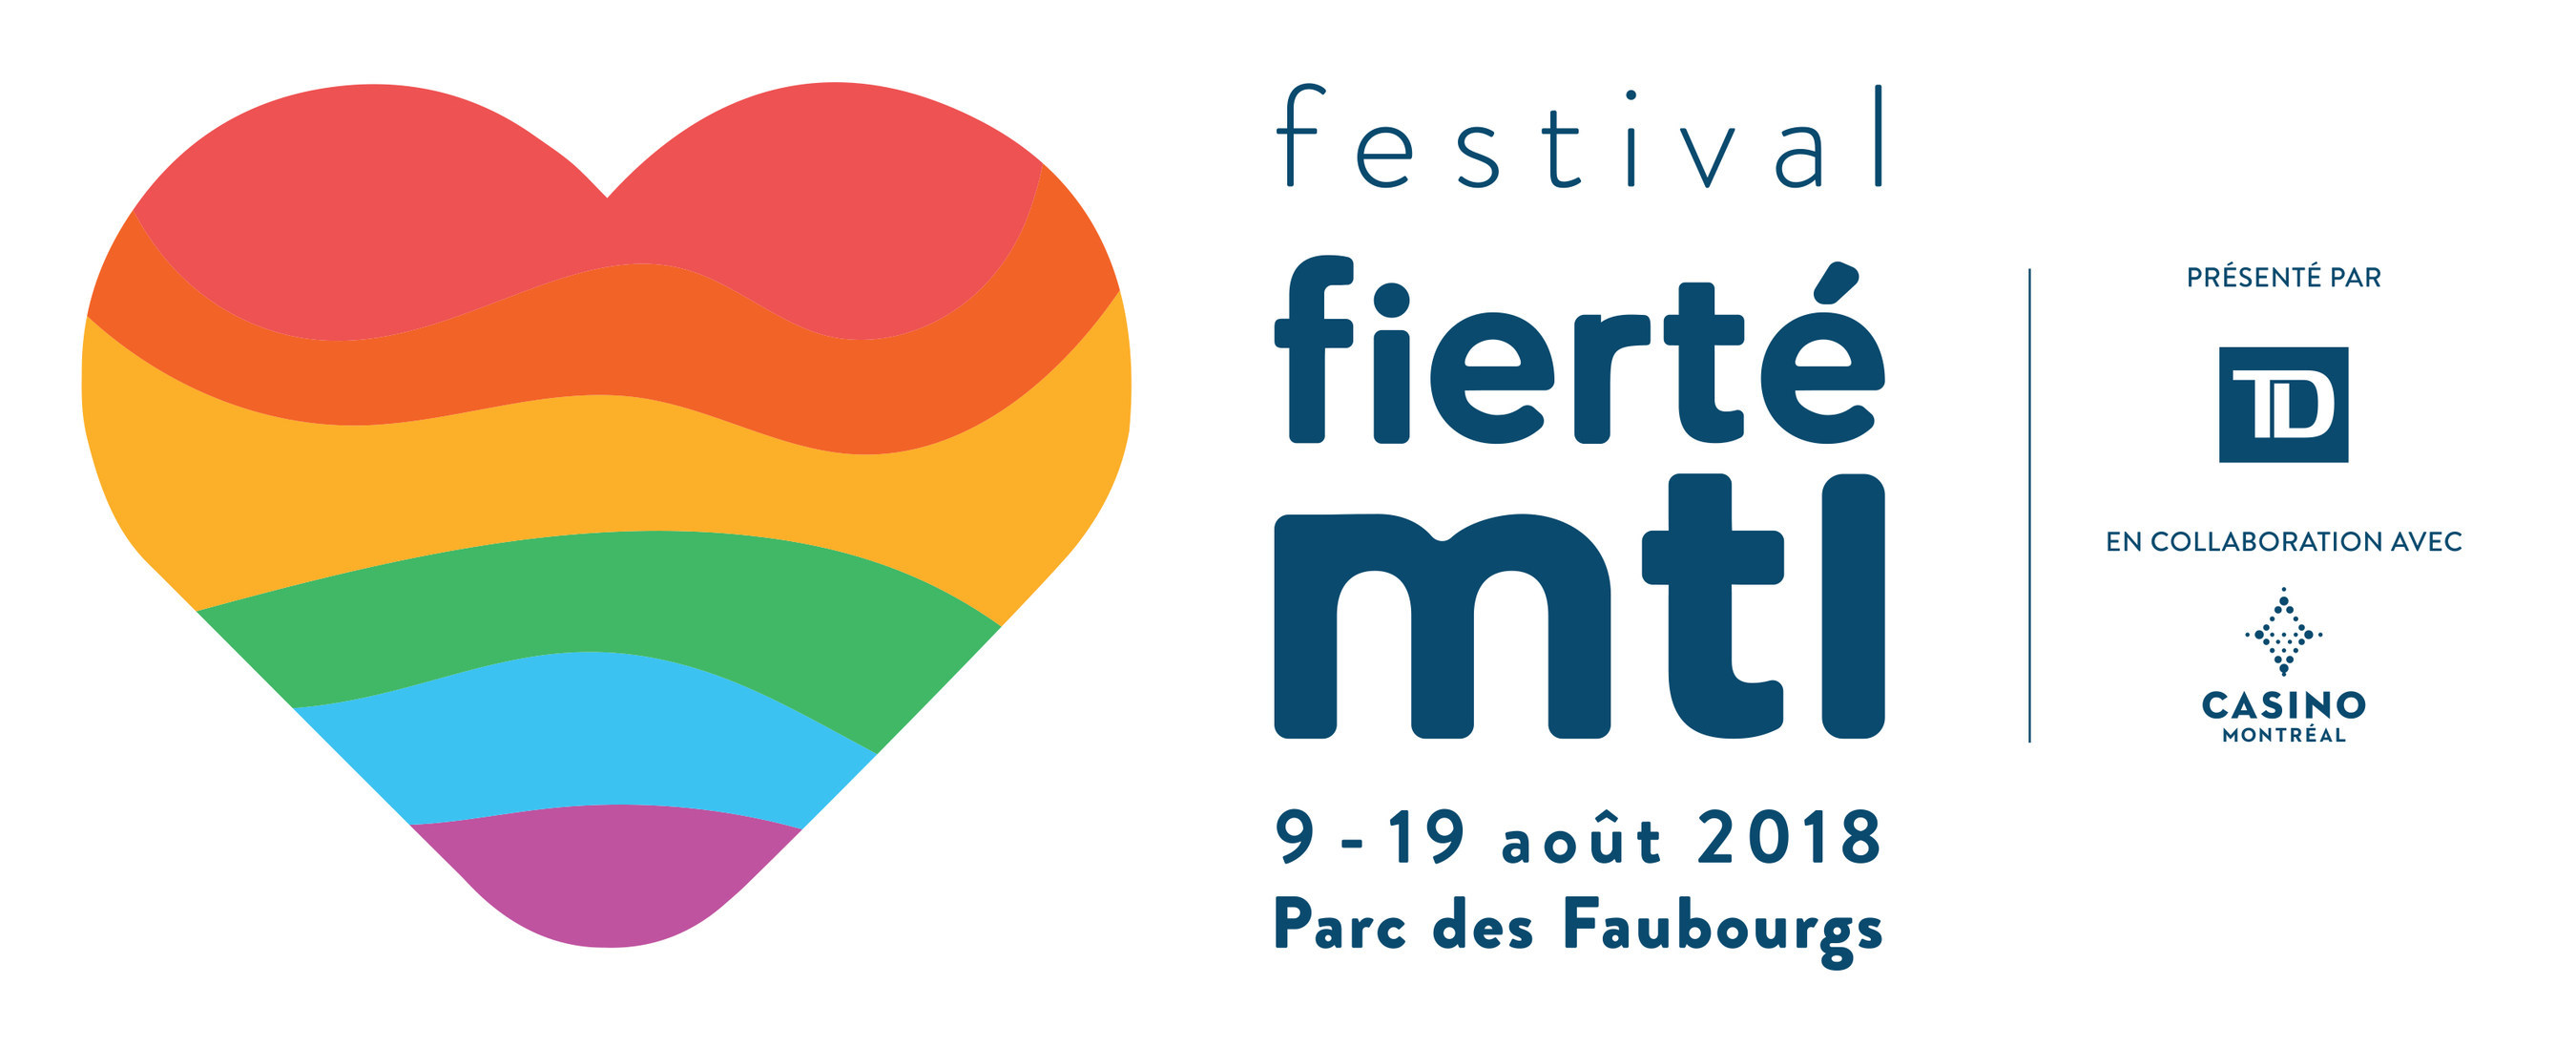 Le festival Fierté Montréal place les femmes à l'avant-scène!